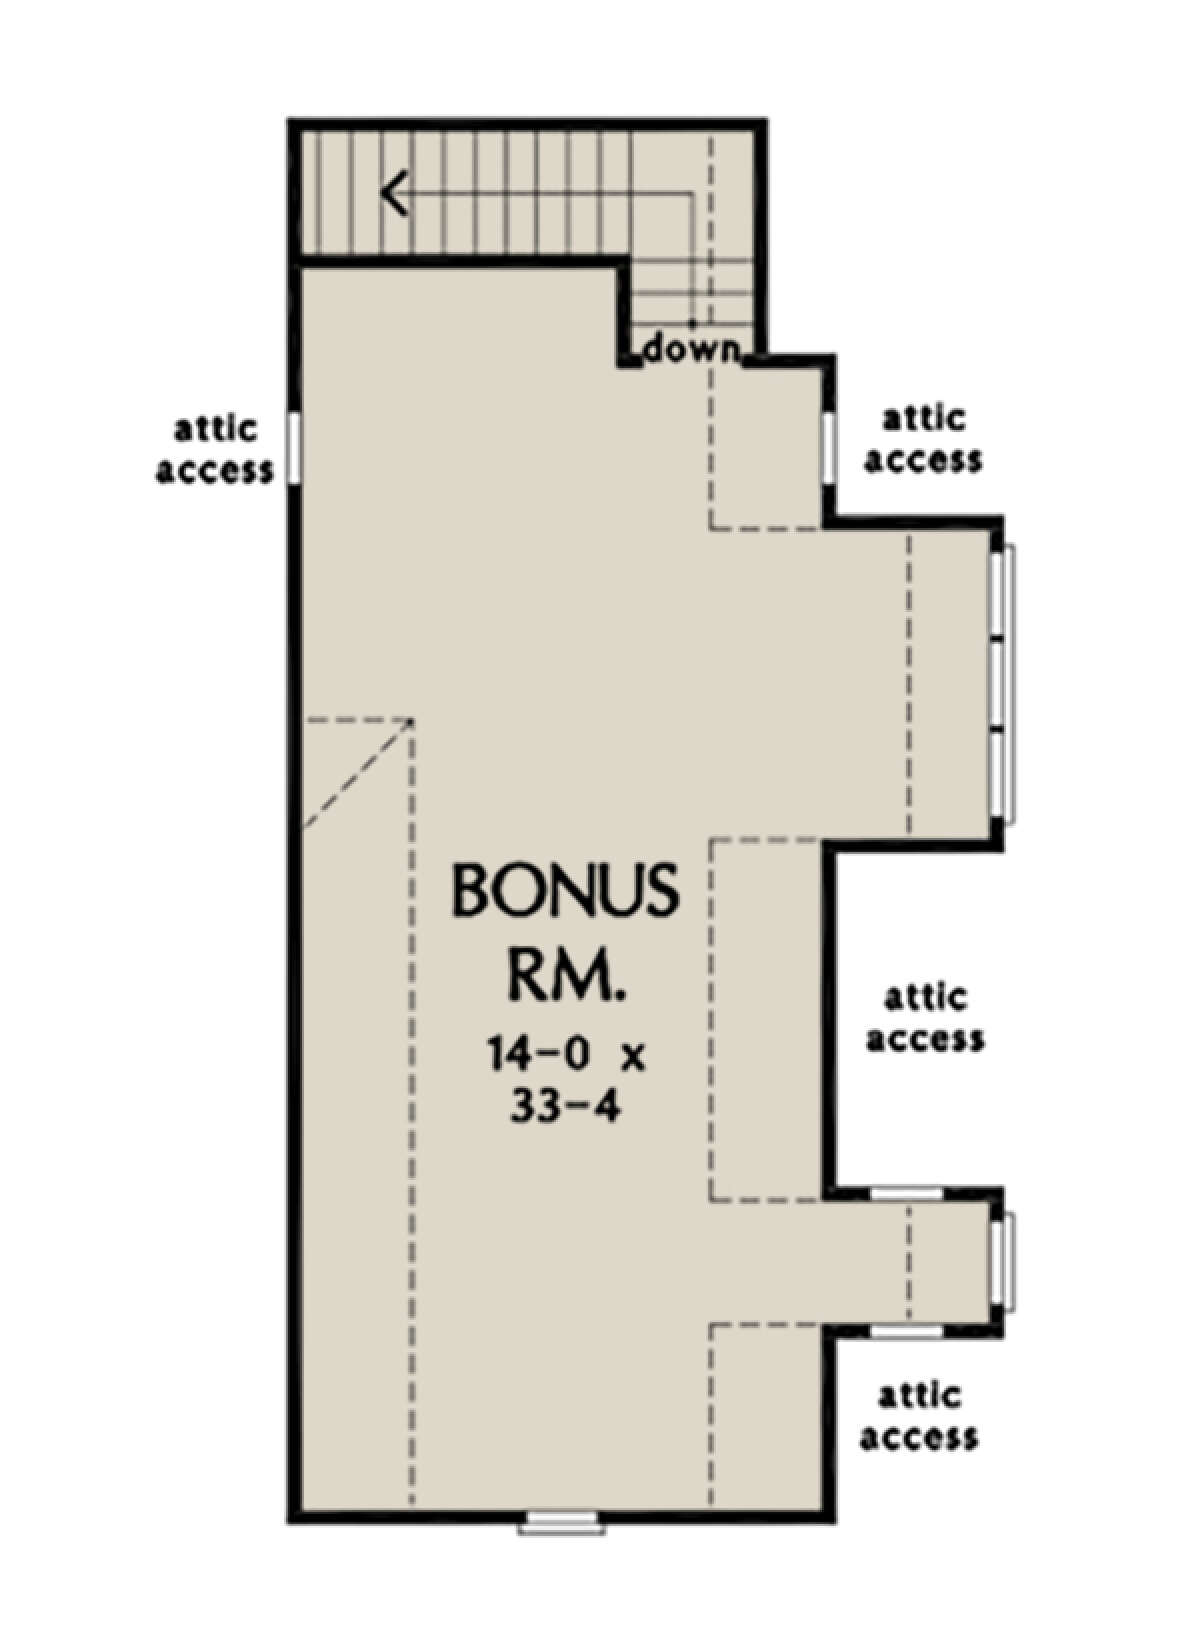 Bonus Room for House Plan #2865-00048